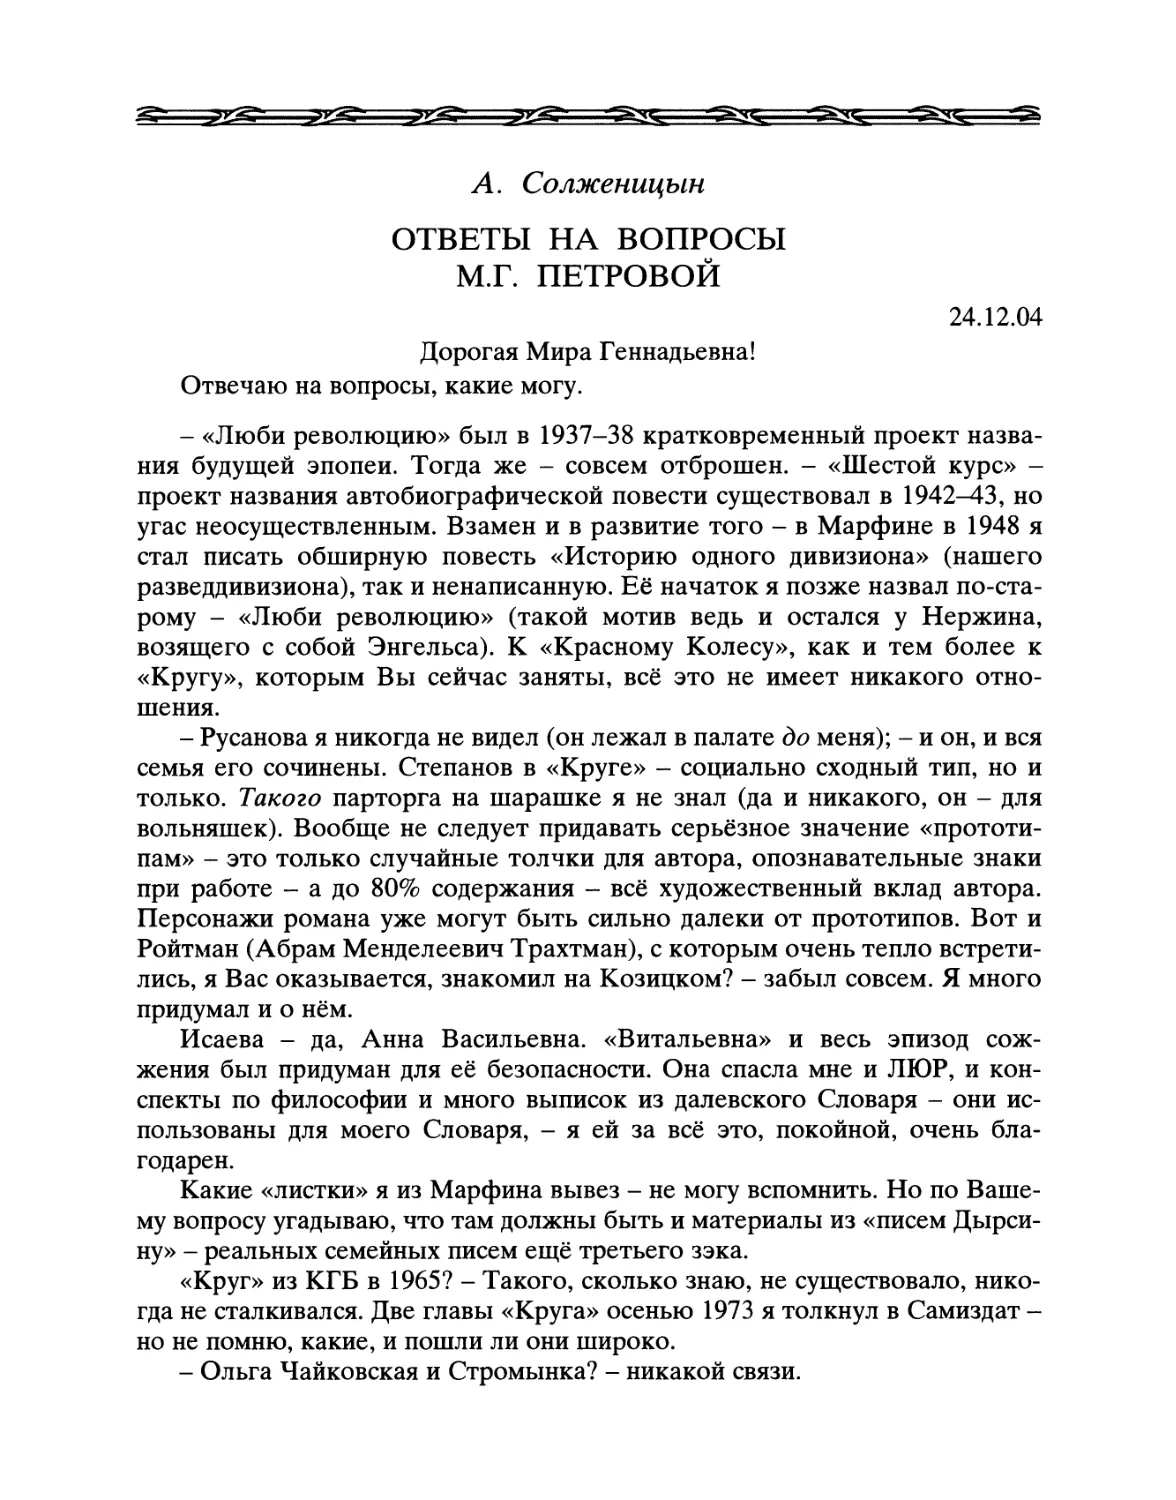 А. Солженицын. Ответы на вопросы М.Г. Петровой. 24 декабря 2004 г.